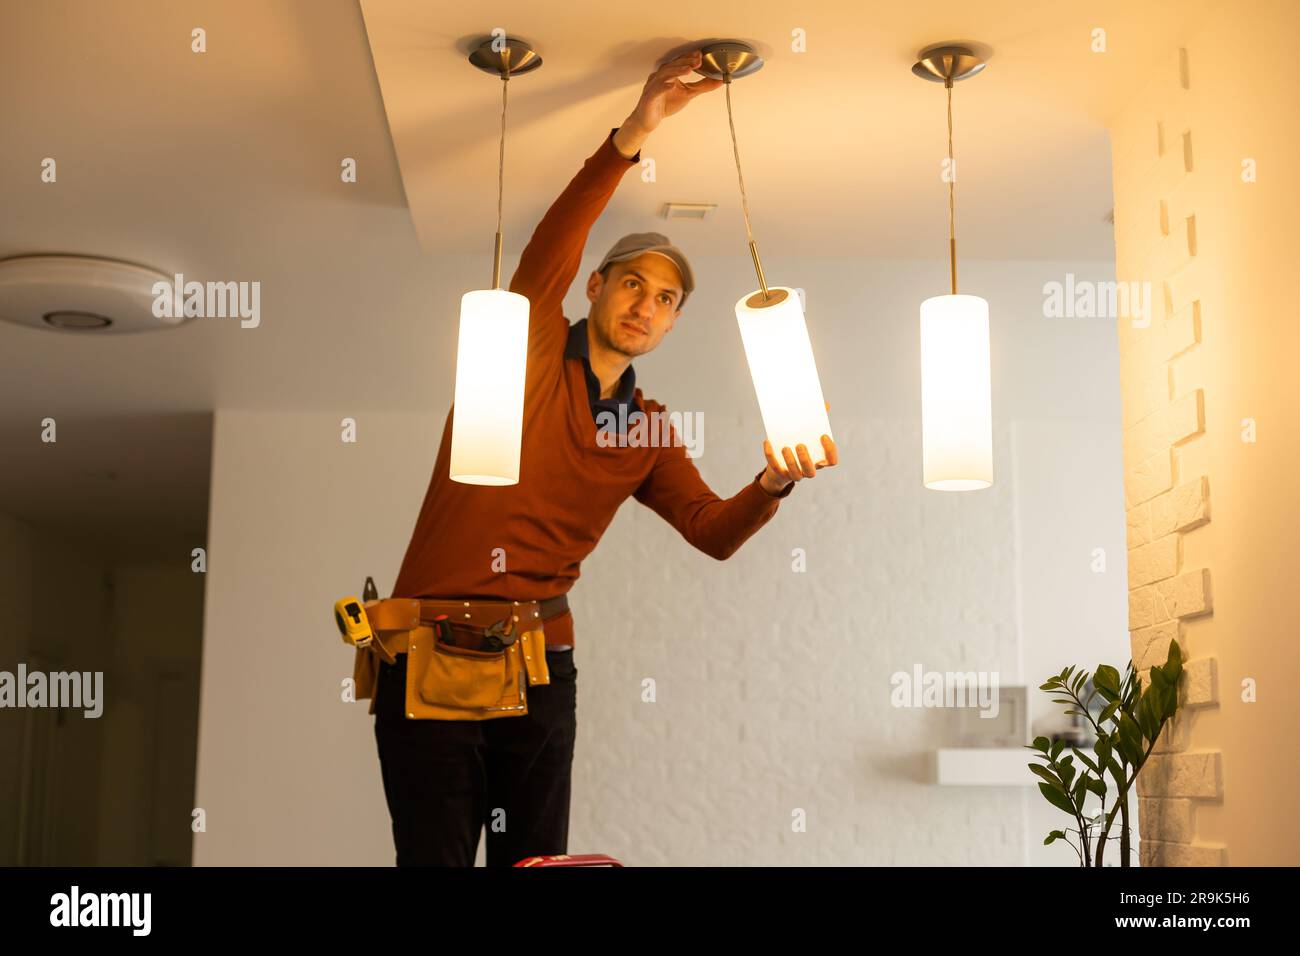 Elektriker Arbeiter Installation elektrische Lampen Licht in der Wohnung.  Konzept der Baudekoration Stockfotografie - Alamy